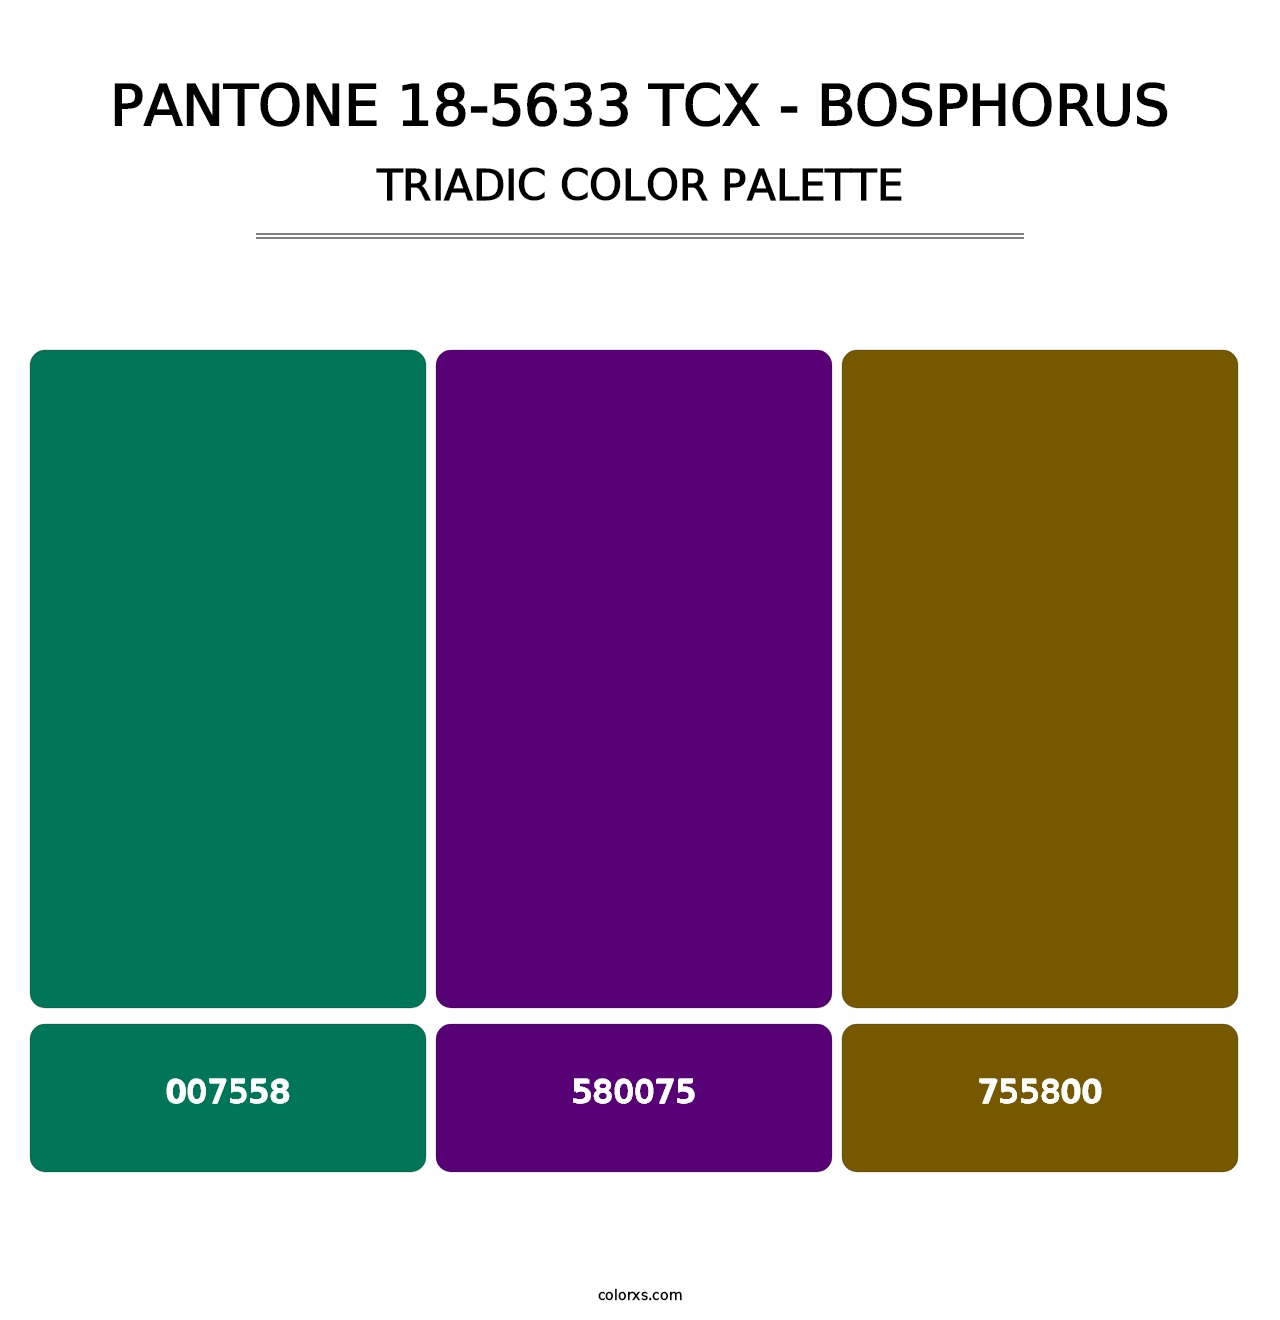 PANTONE 18-5633 TCX - Bosphorus - Triadic Color Palette